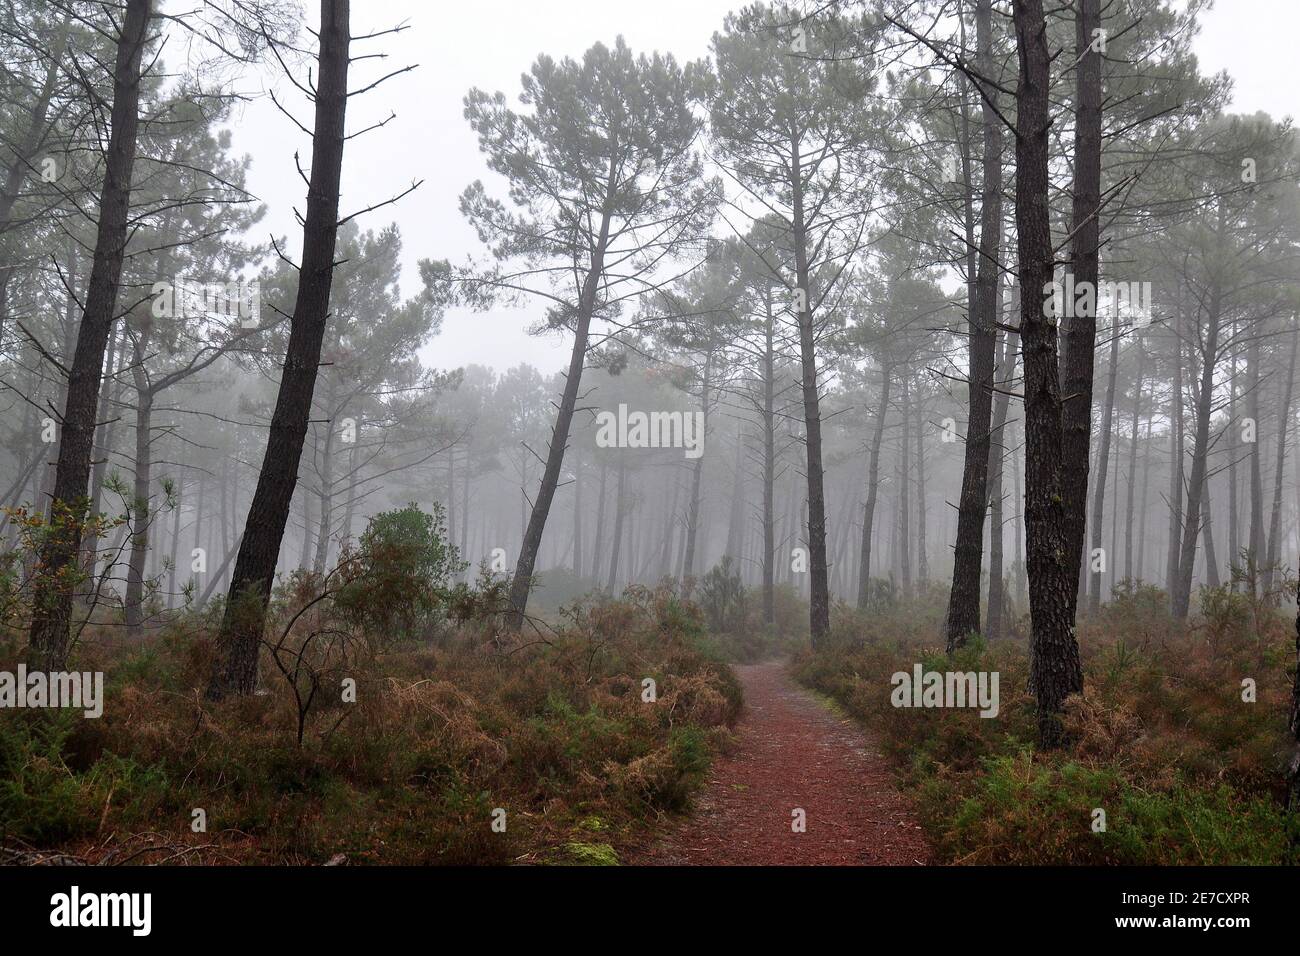 Francia, Aquitania, una mattina foggosa nella foresta delle Lande, quando la nebbia sta lottando per dissipare prima dell'alba. Foto Stock